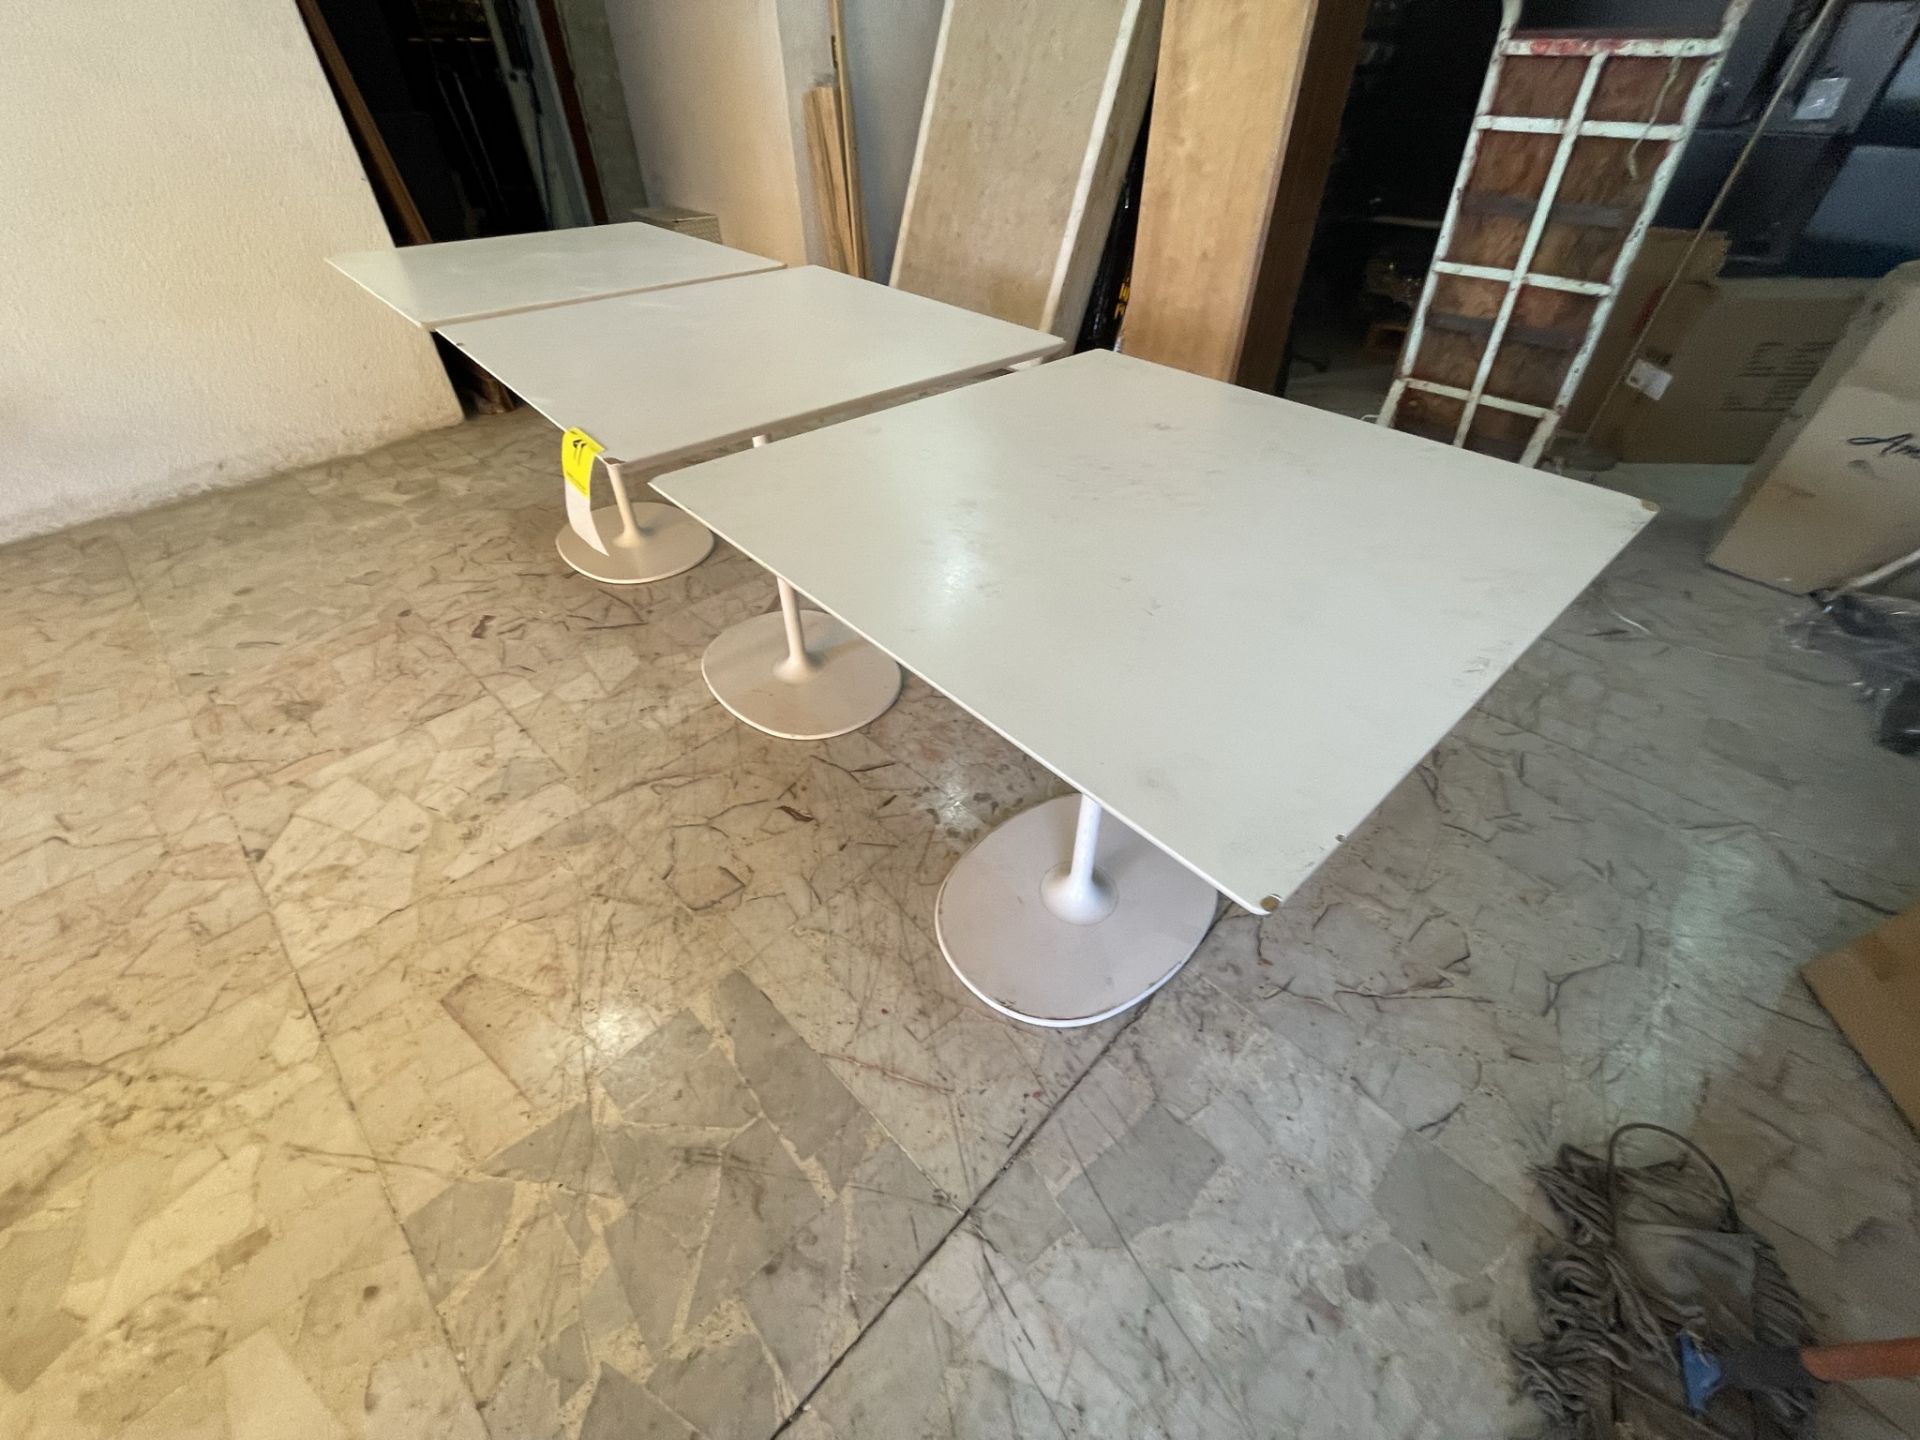 Lote de 3 mesas de madera con base de metal de 80 x 80 x 74, Color BLANCO (Favor de inspecciona - Image 5 of 7